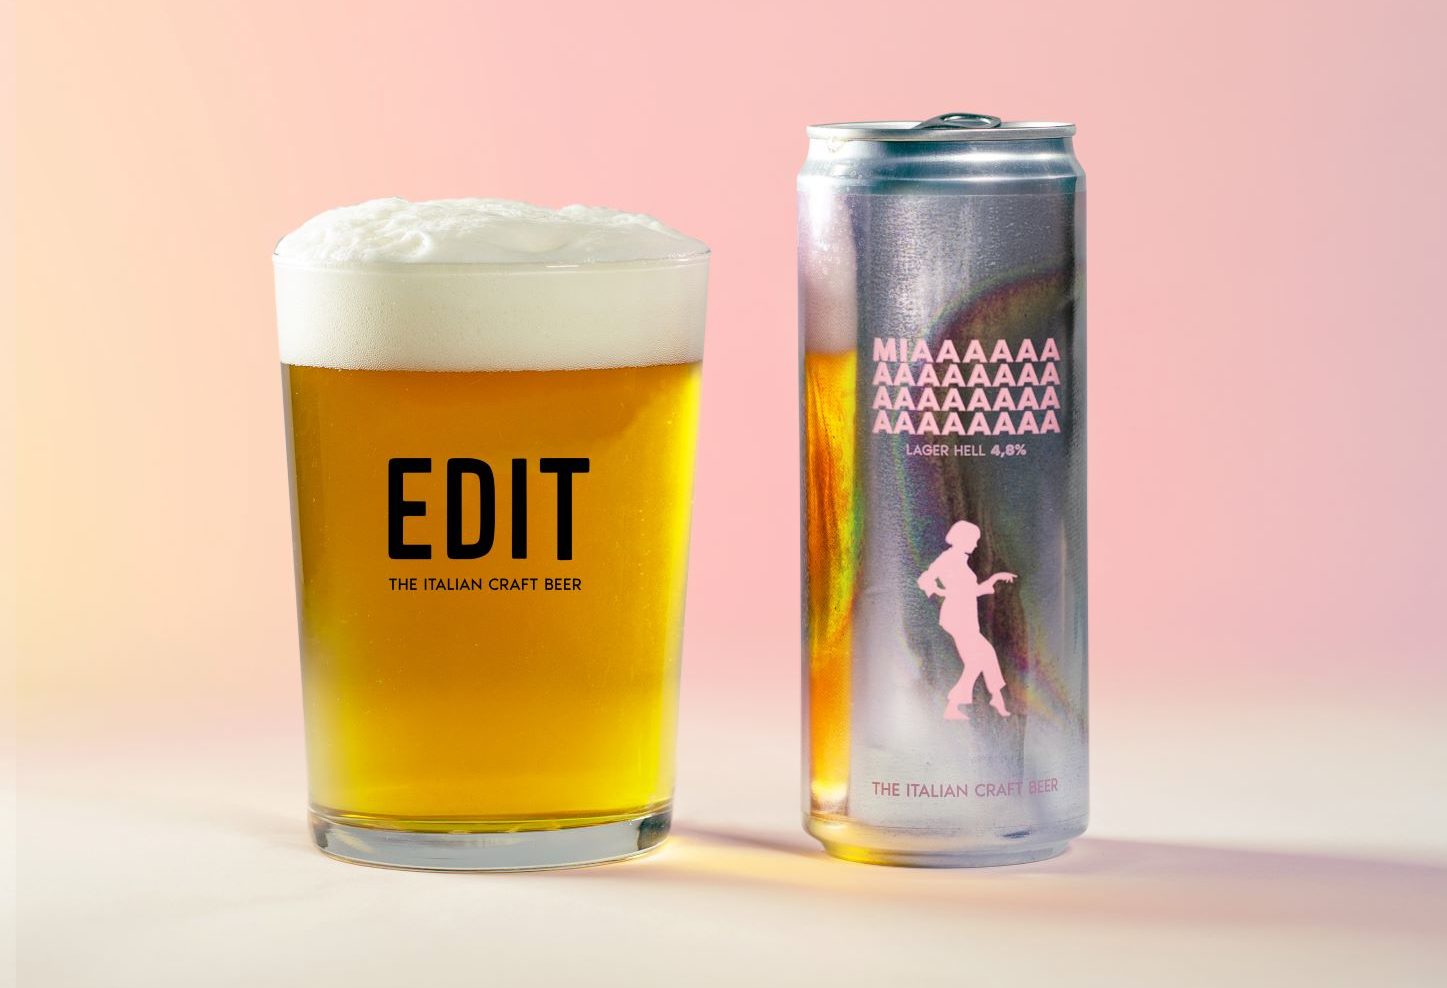 birra Mia del birrificio italiano EDIT, bicchiere pieno con scritta EDIT affiancato da lattina metallizzata con scritta Miaaaa e disegno in rosa